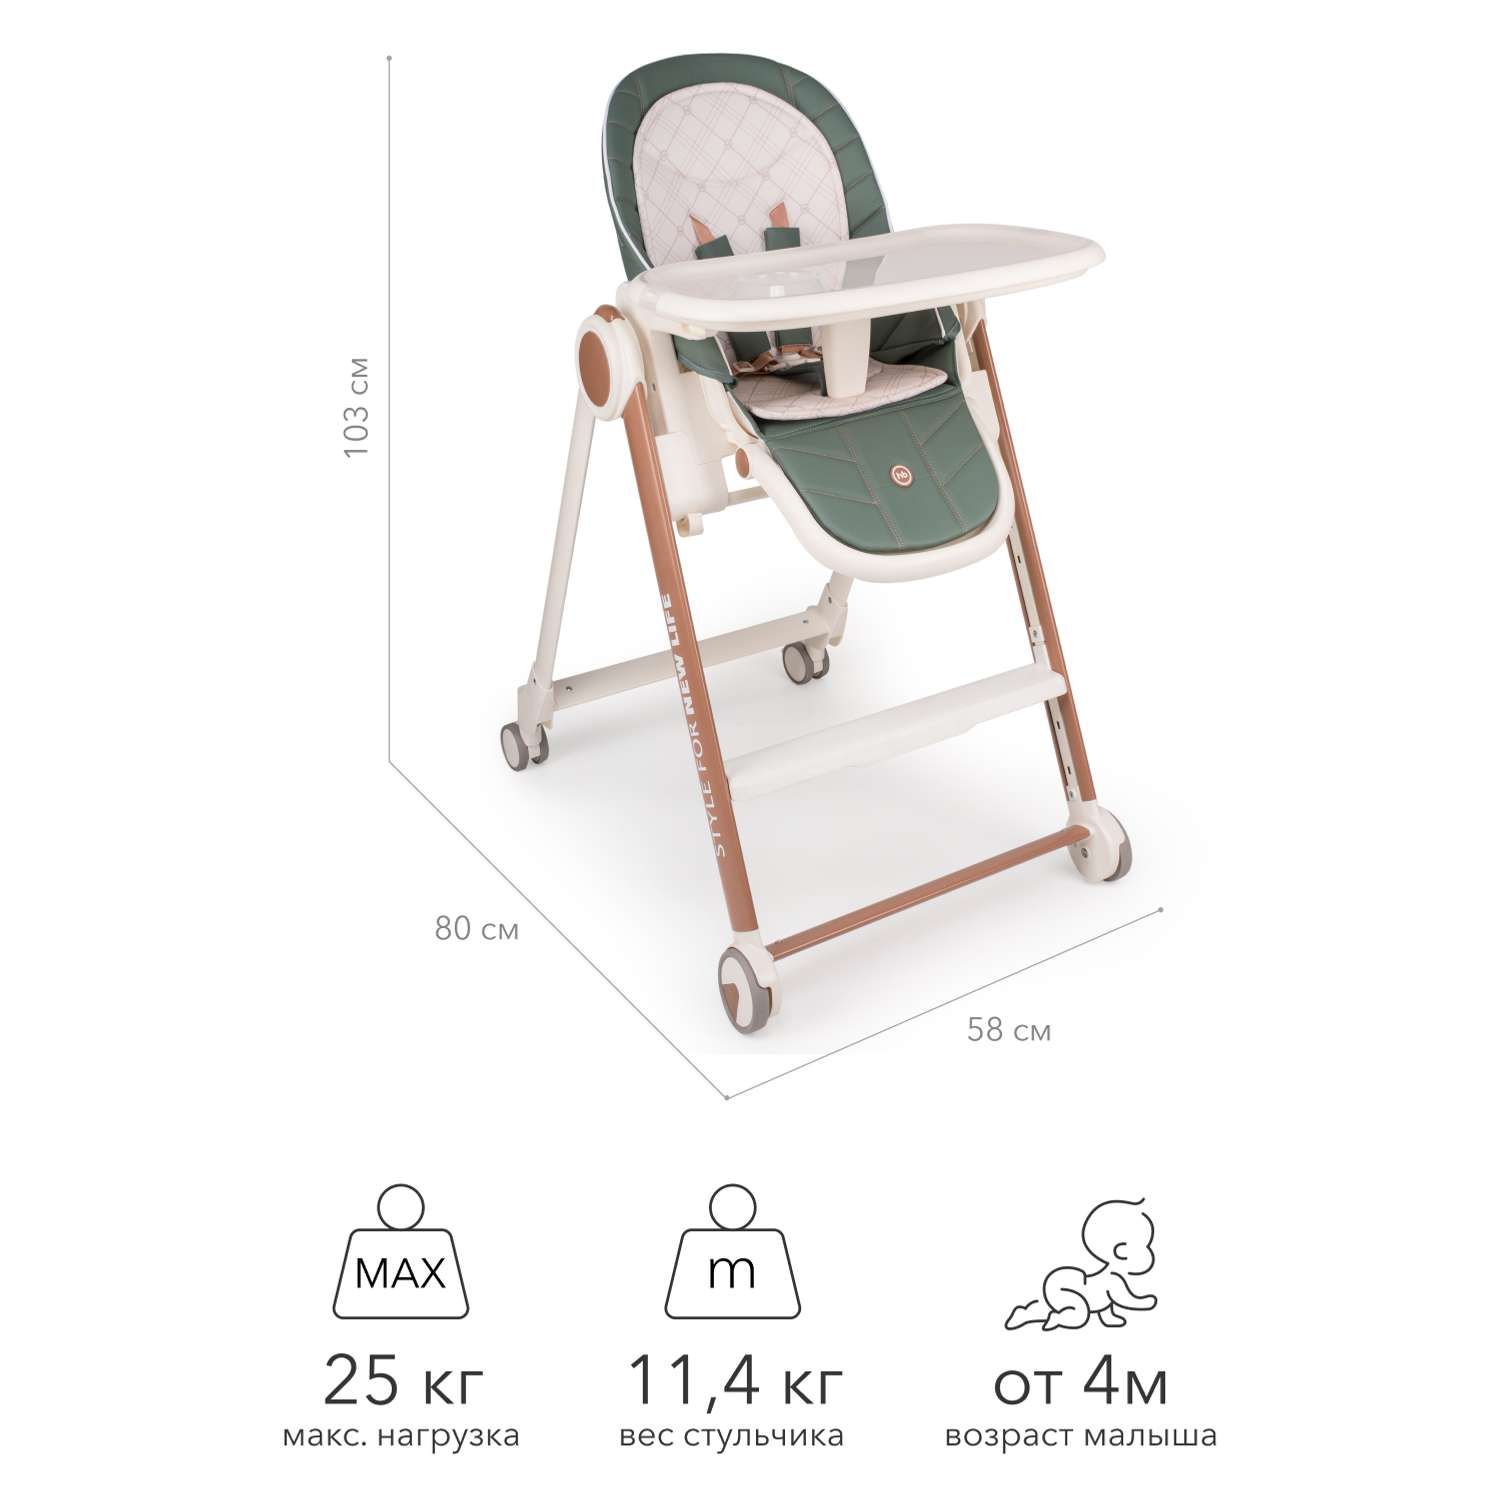 Ремни безопасности на стульчик для кормления happy baby